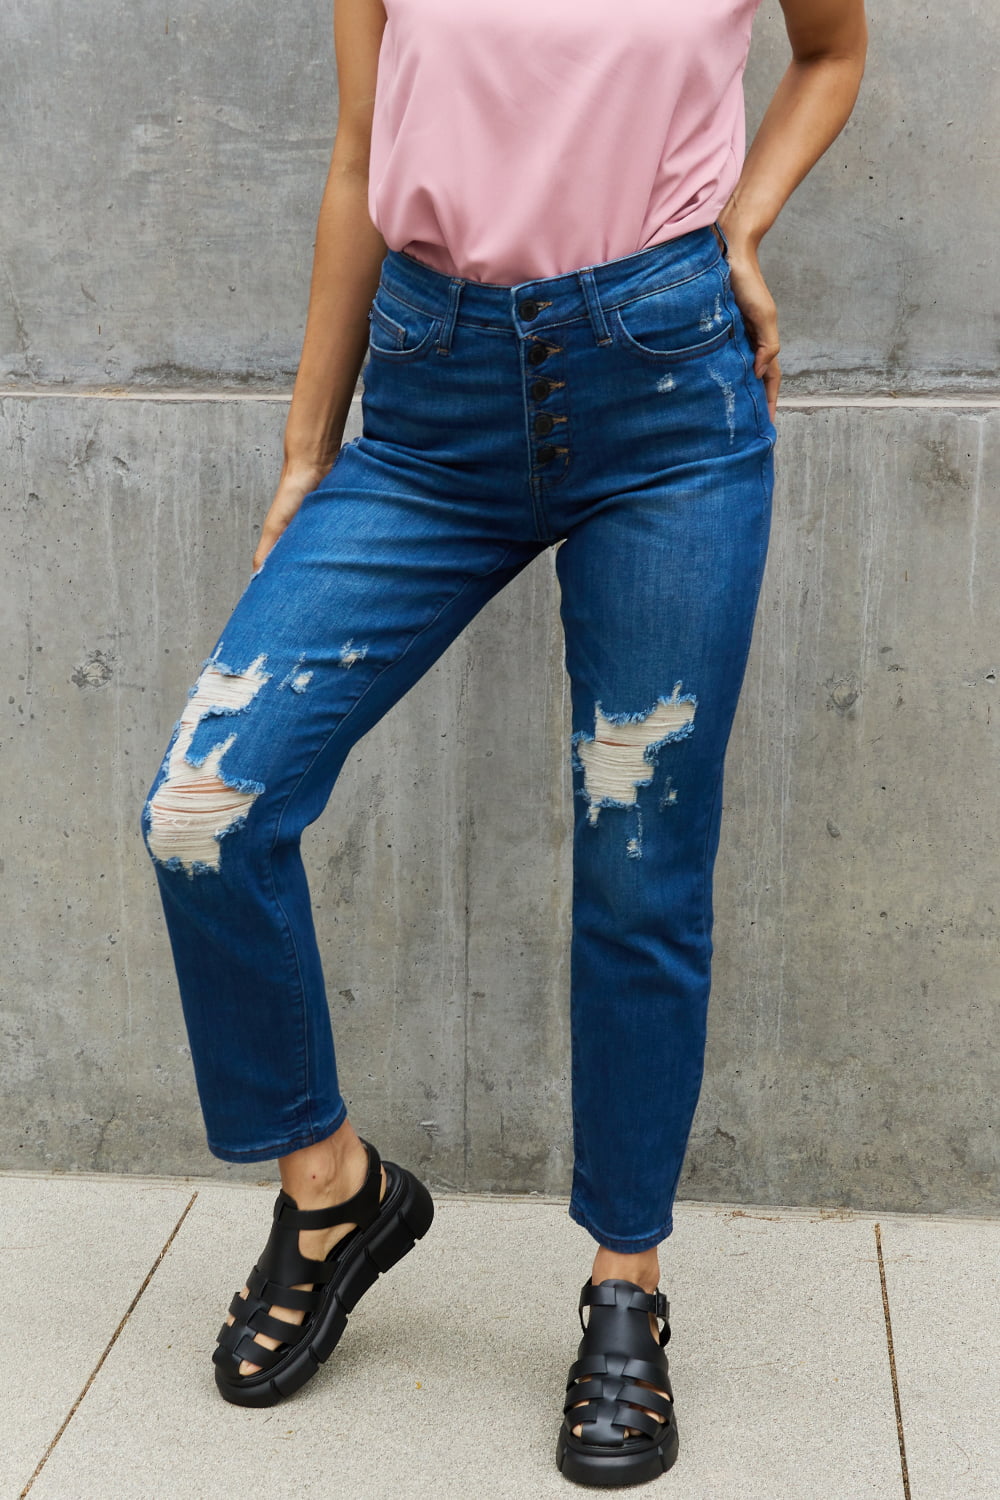 Judy Blue Melanie Full Size High Waisted Distressed Boyfriend Jeans  Krazy Heart Designs Boutique Dark 0(24) 